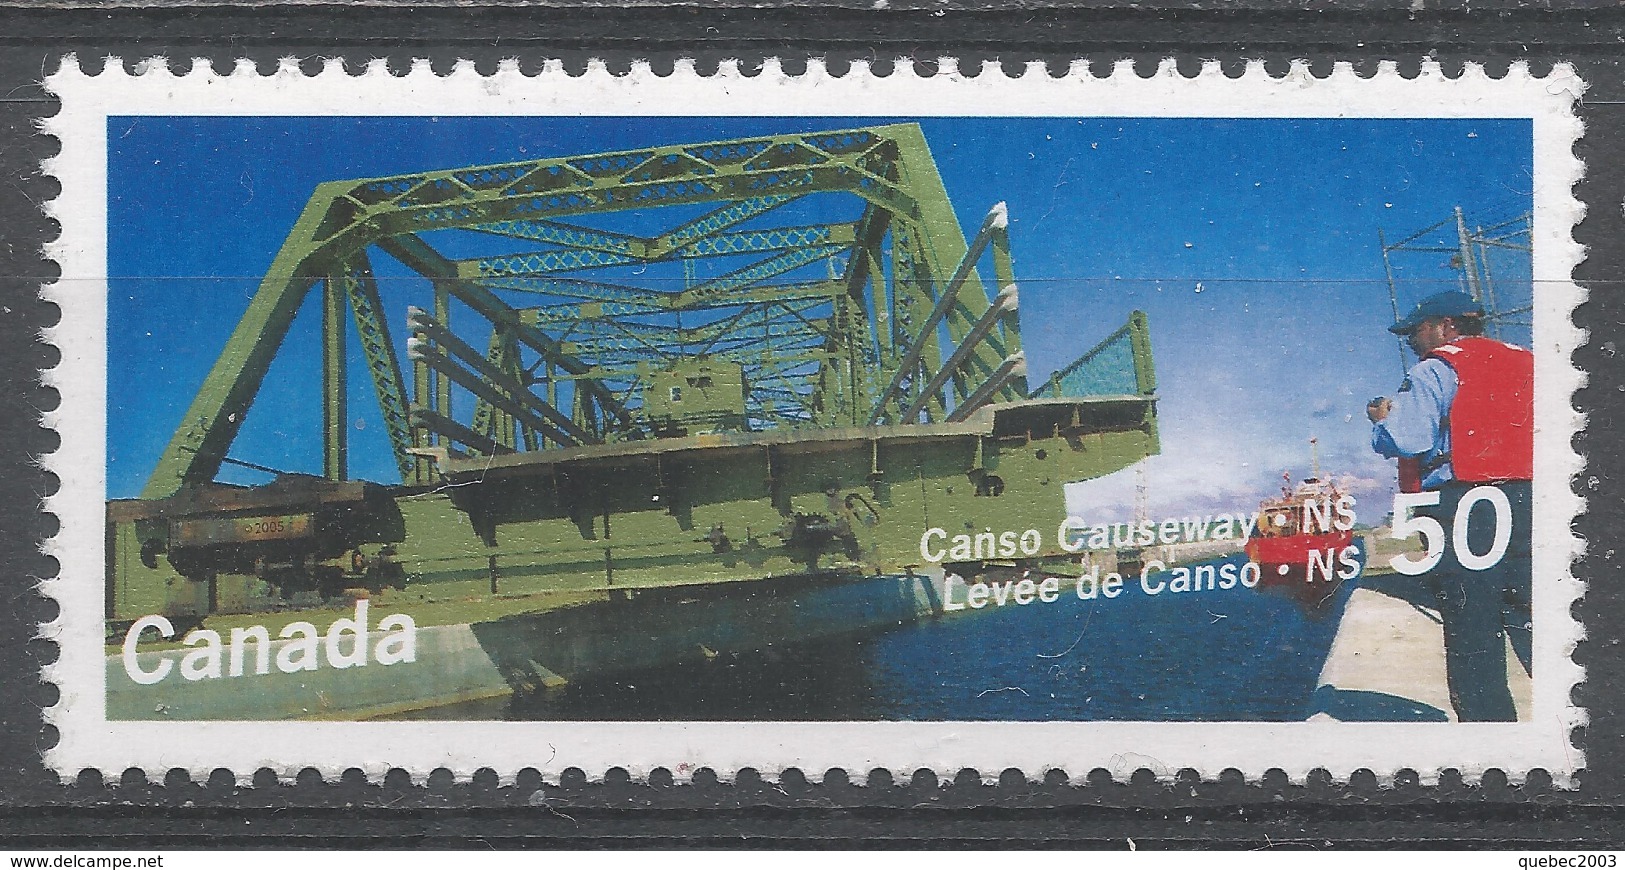 Canada 2005 Scott #2103 Canso Causeway, Nova Scotia (MNH) - Unused Stamps